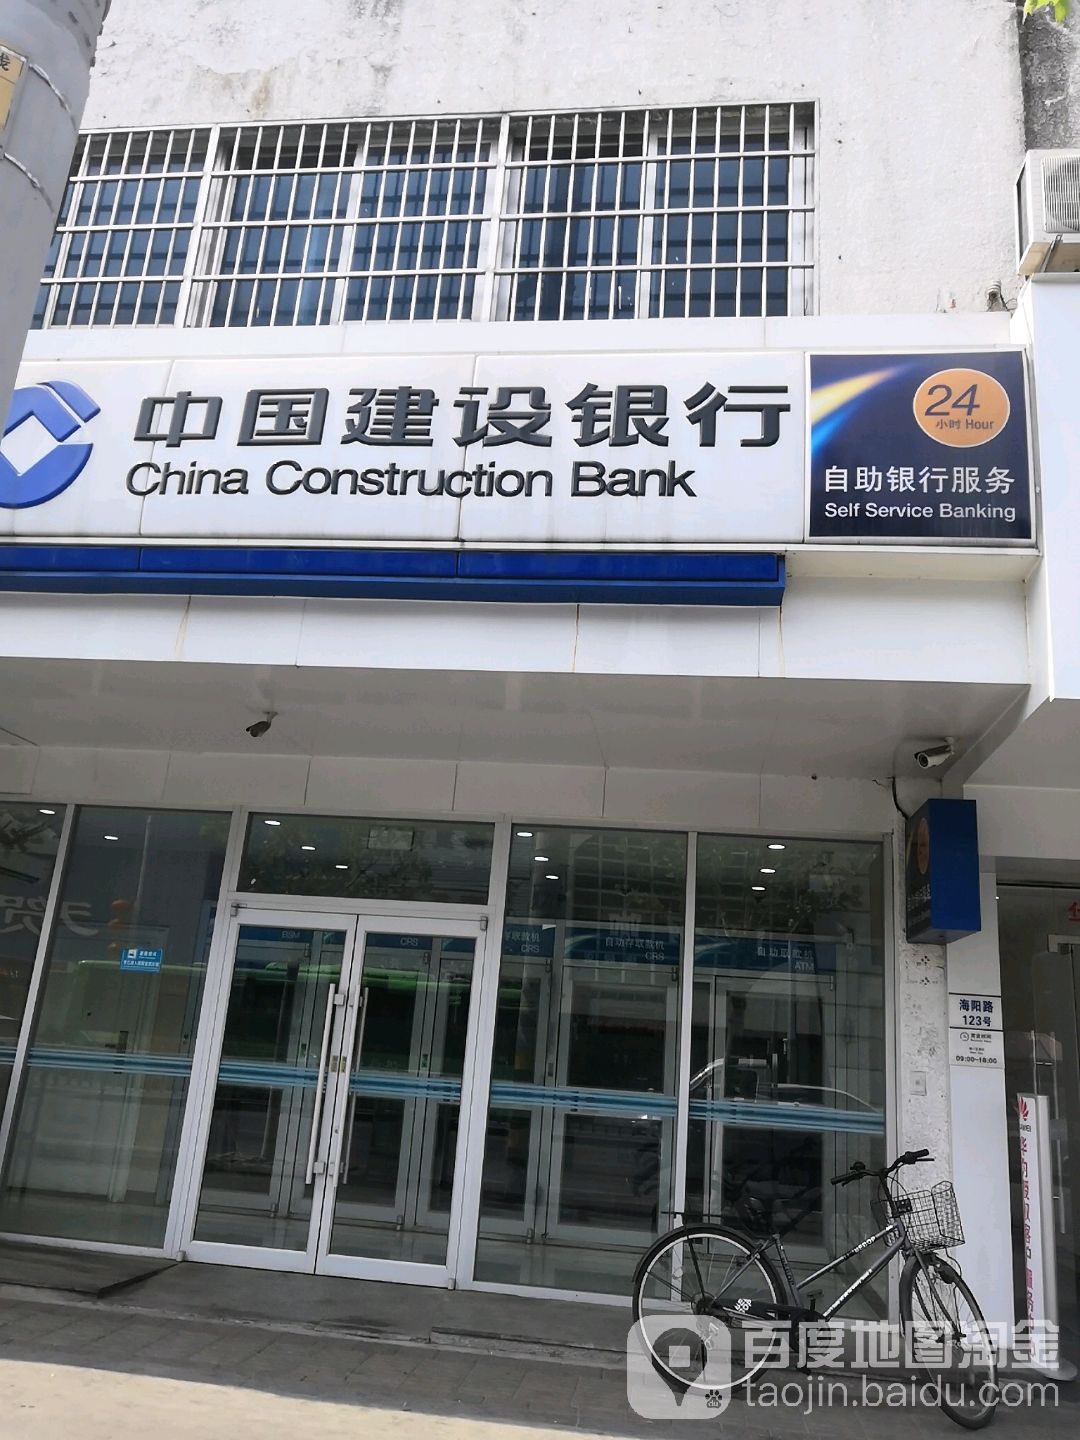 中國建設銀行24小時自助銀行(海陽路店)